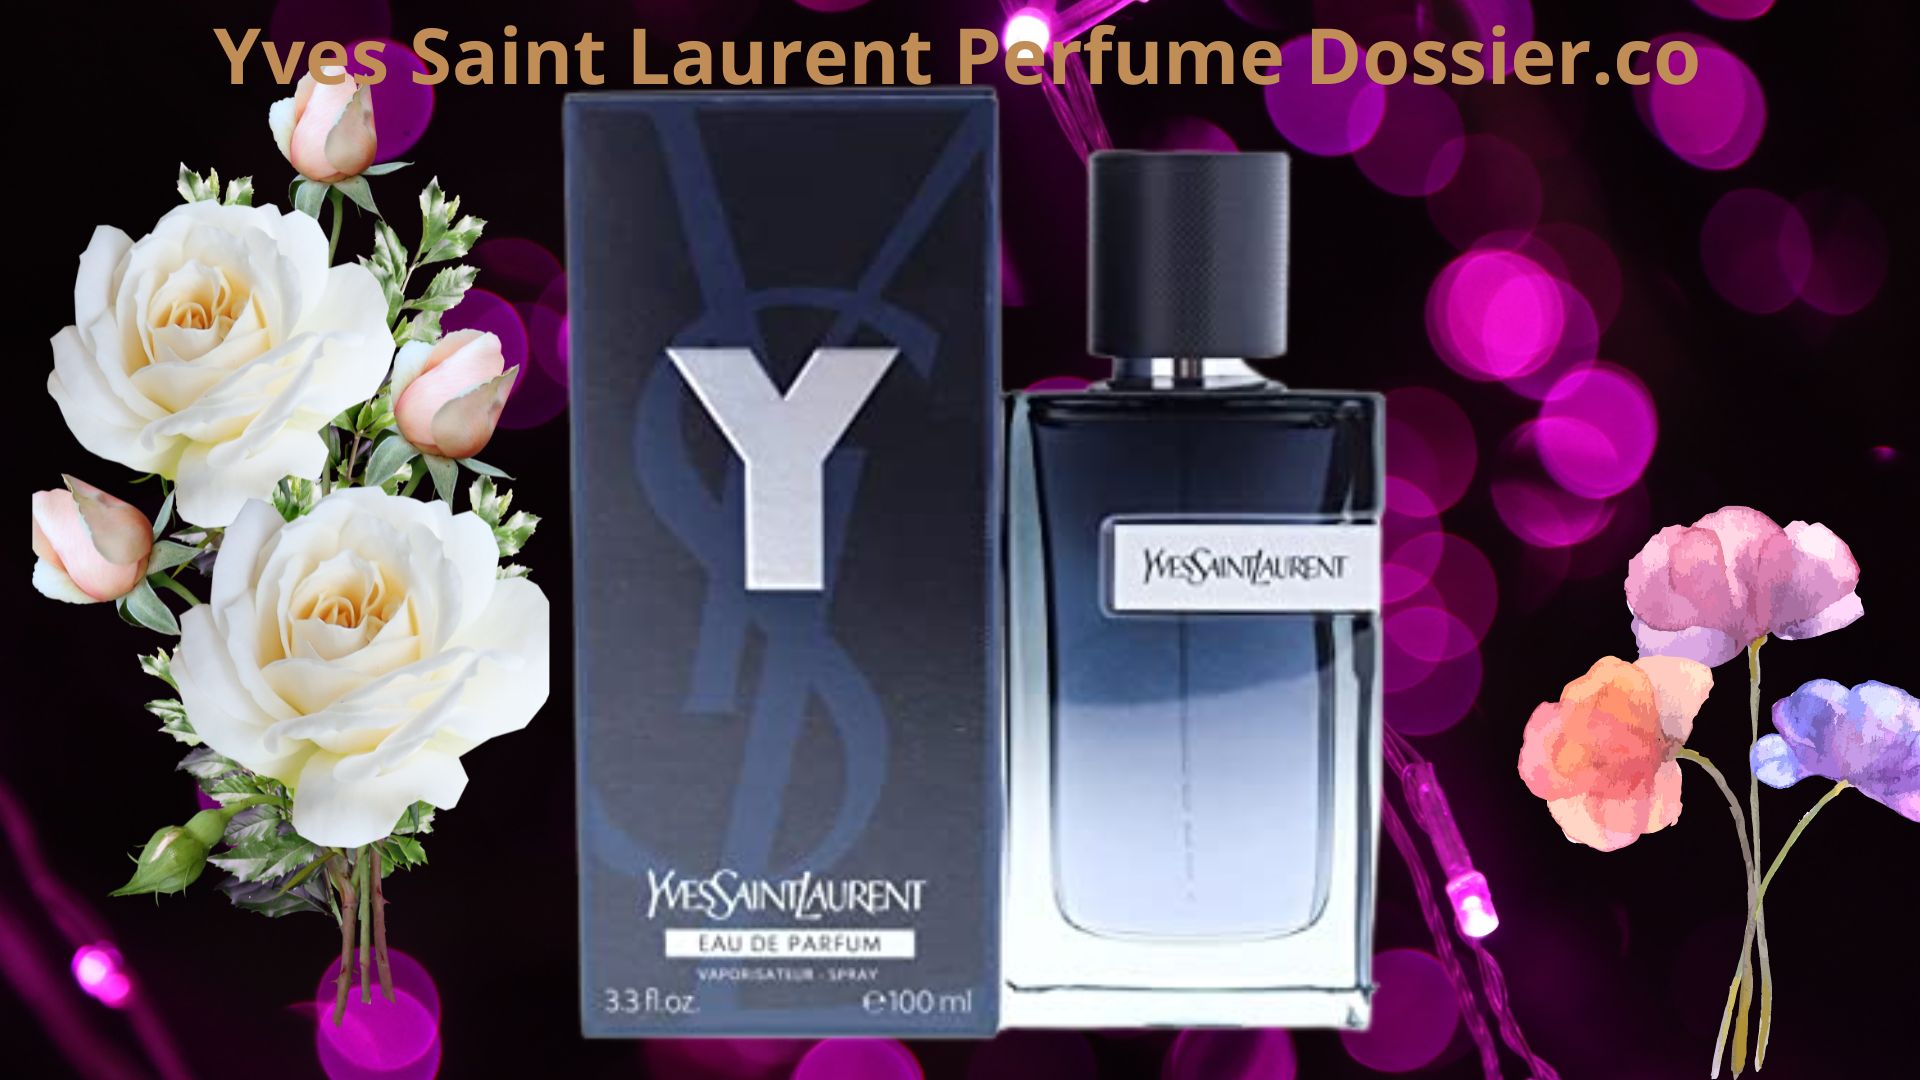 Yves Saint Laurent Perfume Dossier co